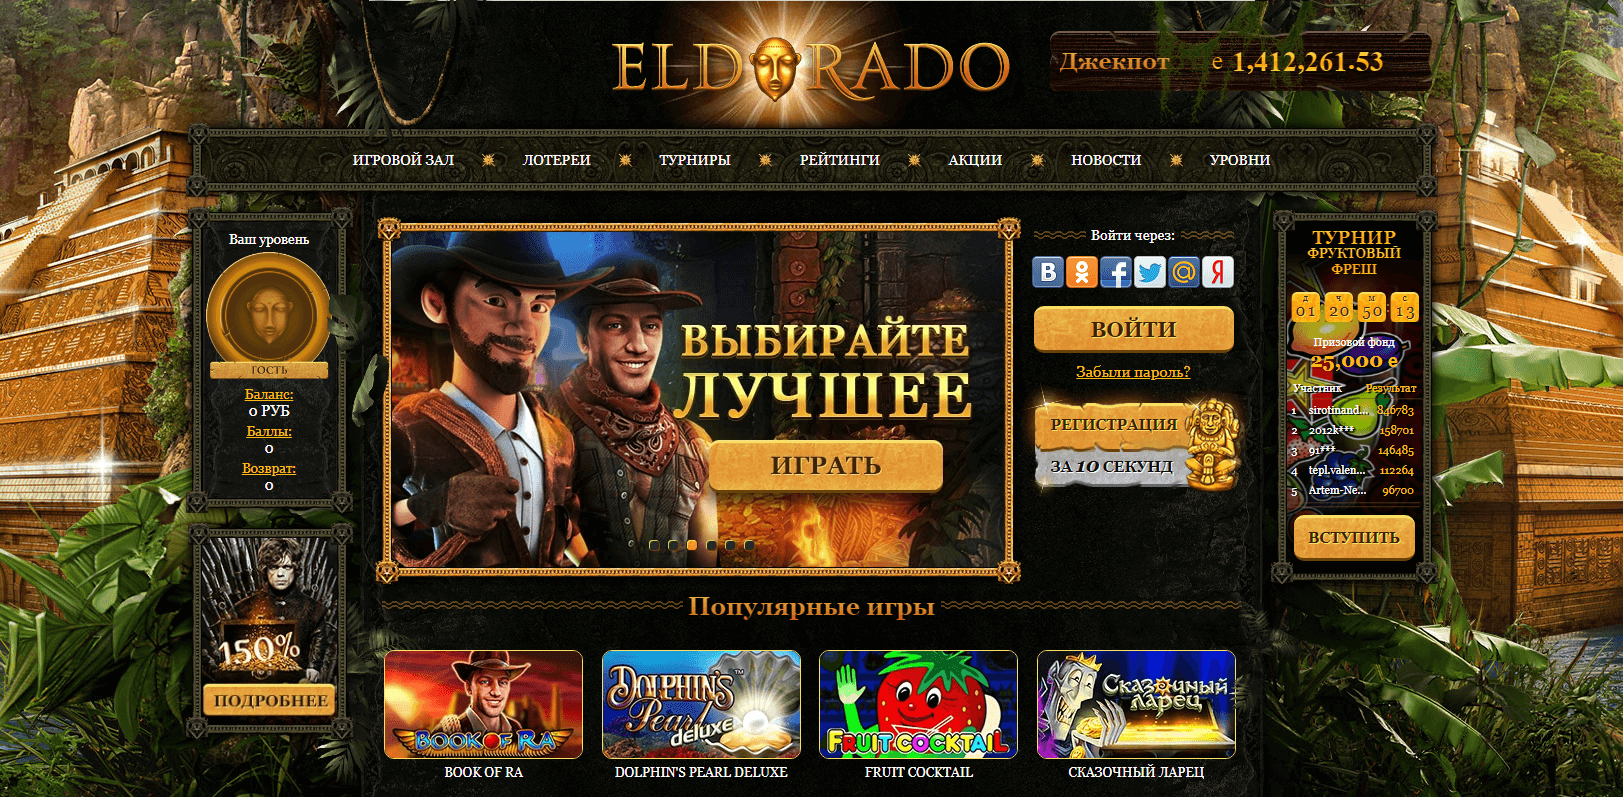 Казино эльдорадо отзывы реальных людей казино вулкан игровые автоматы играть бесплатно онлайн без регистрации